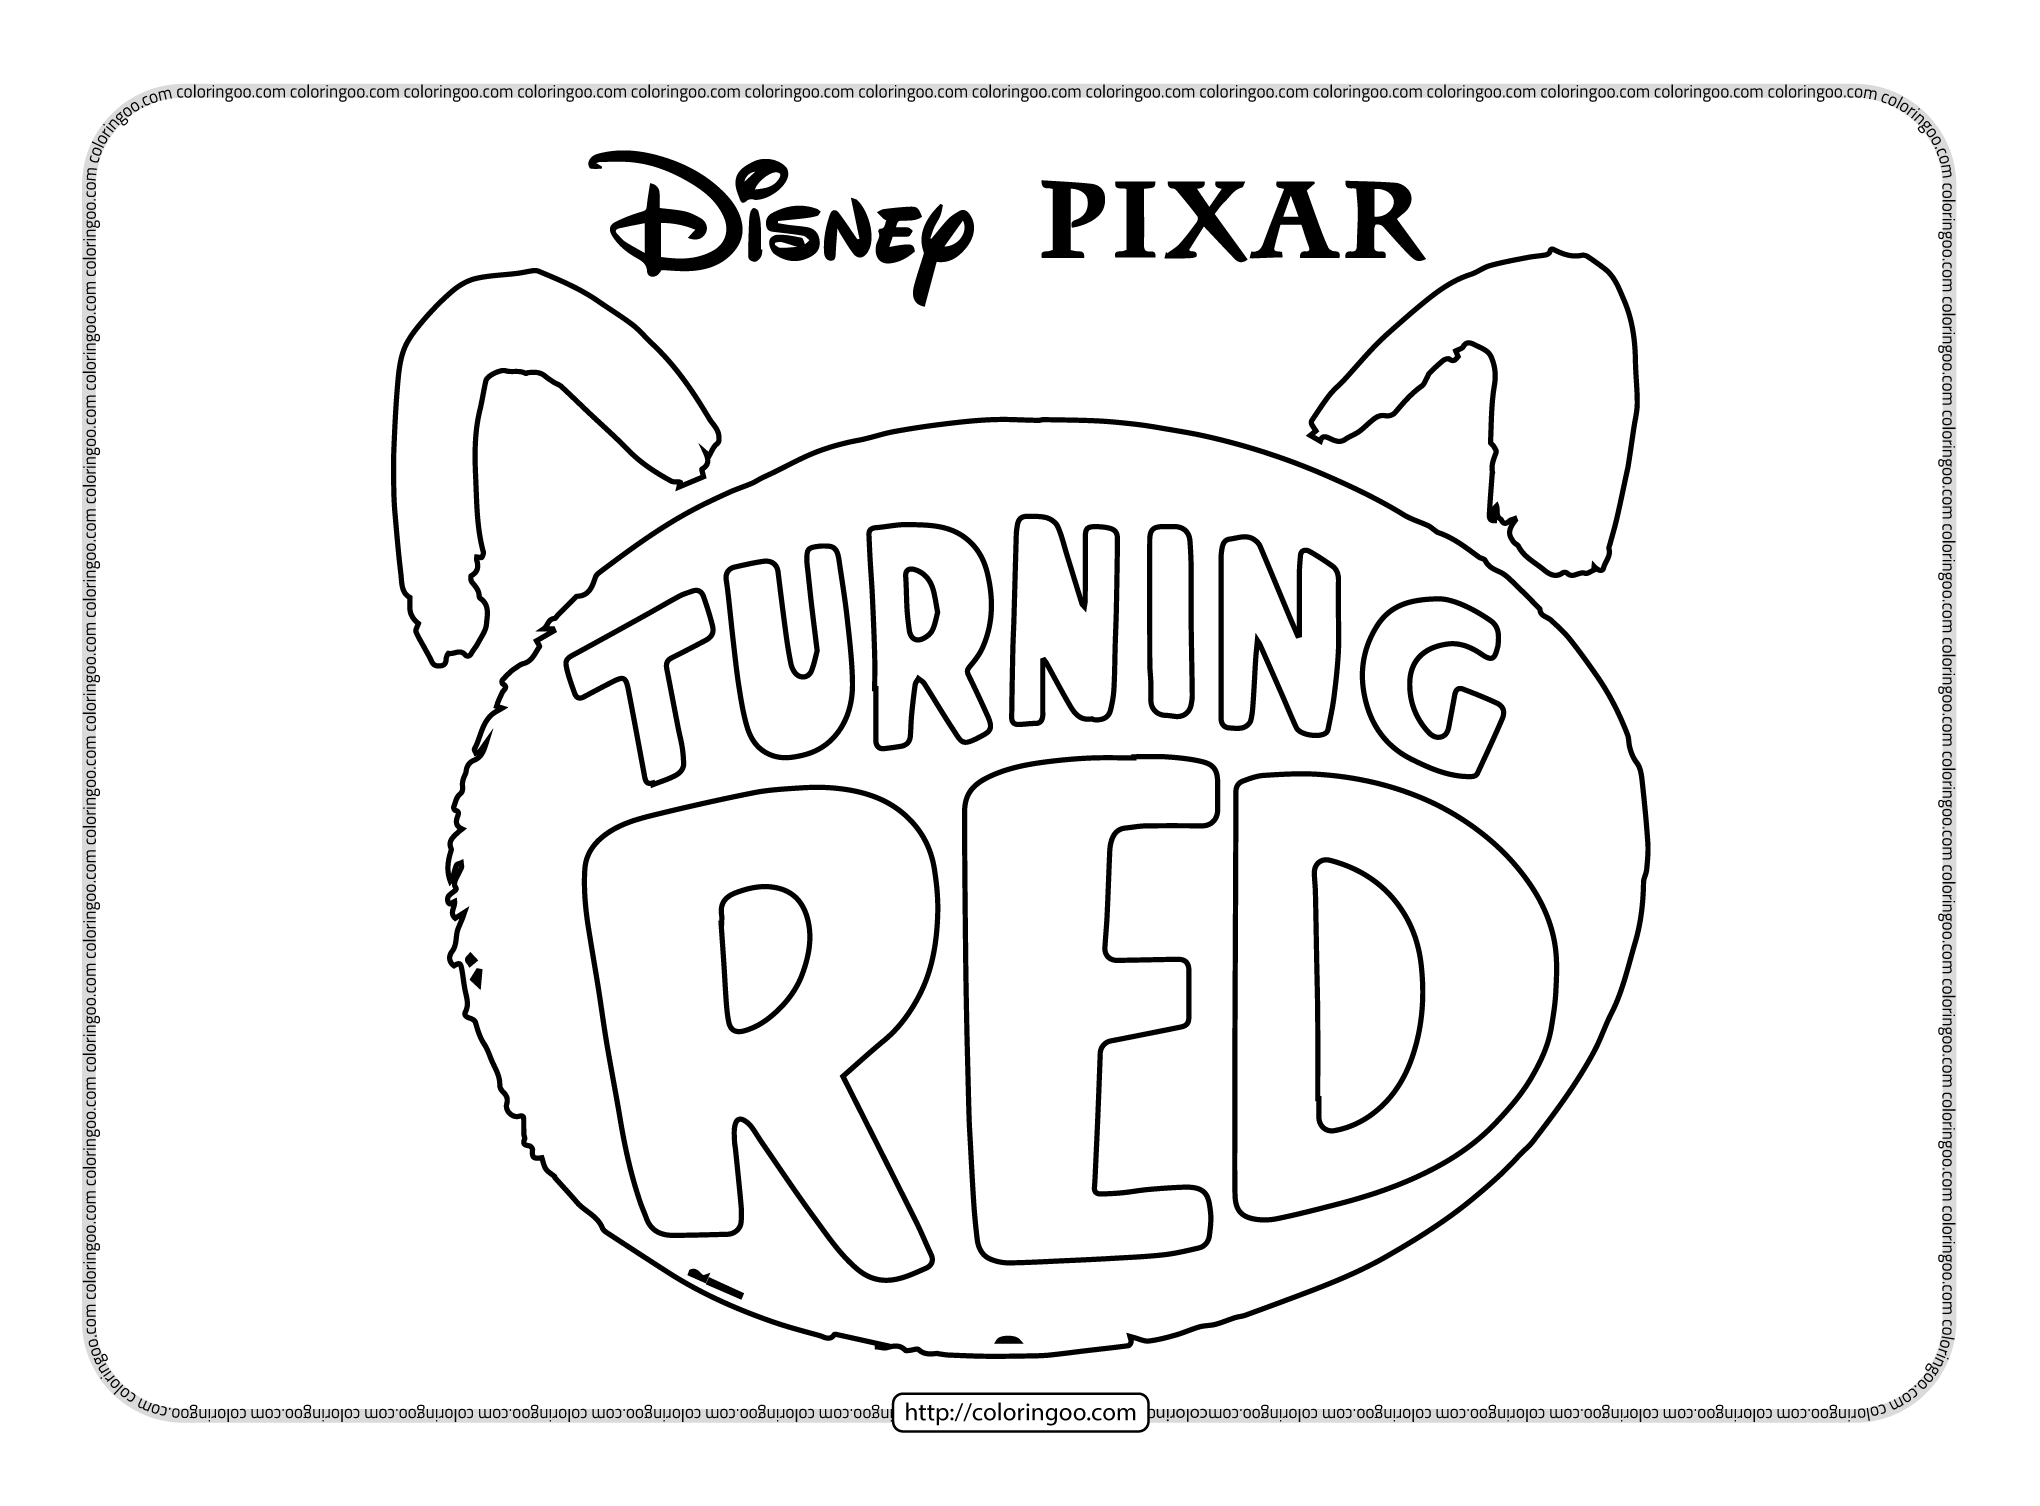 disney pixar turning red logo coloring page